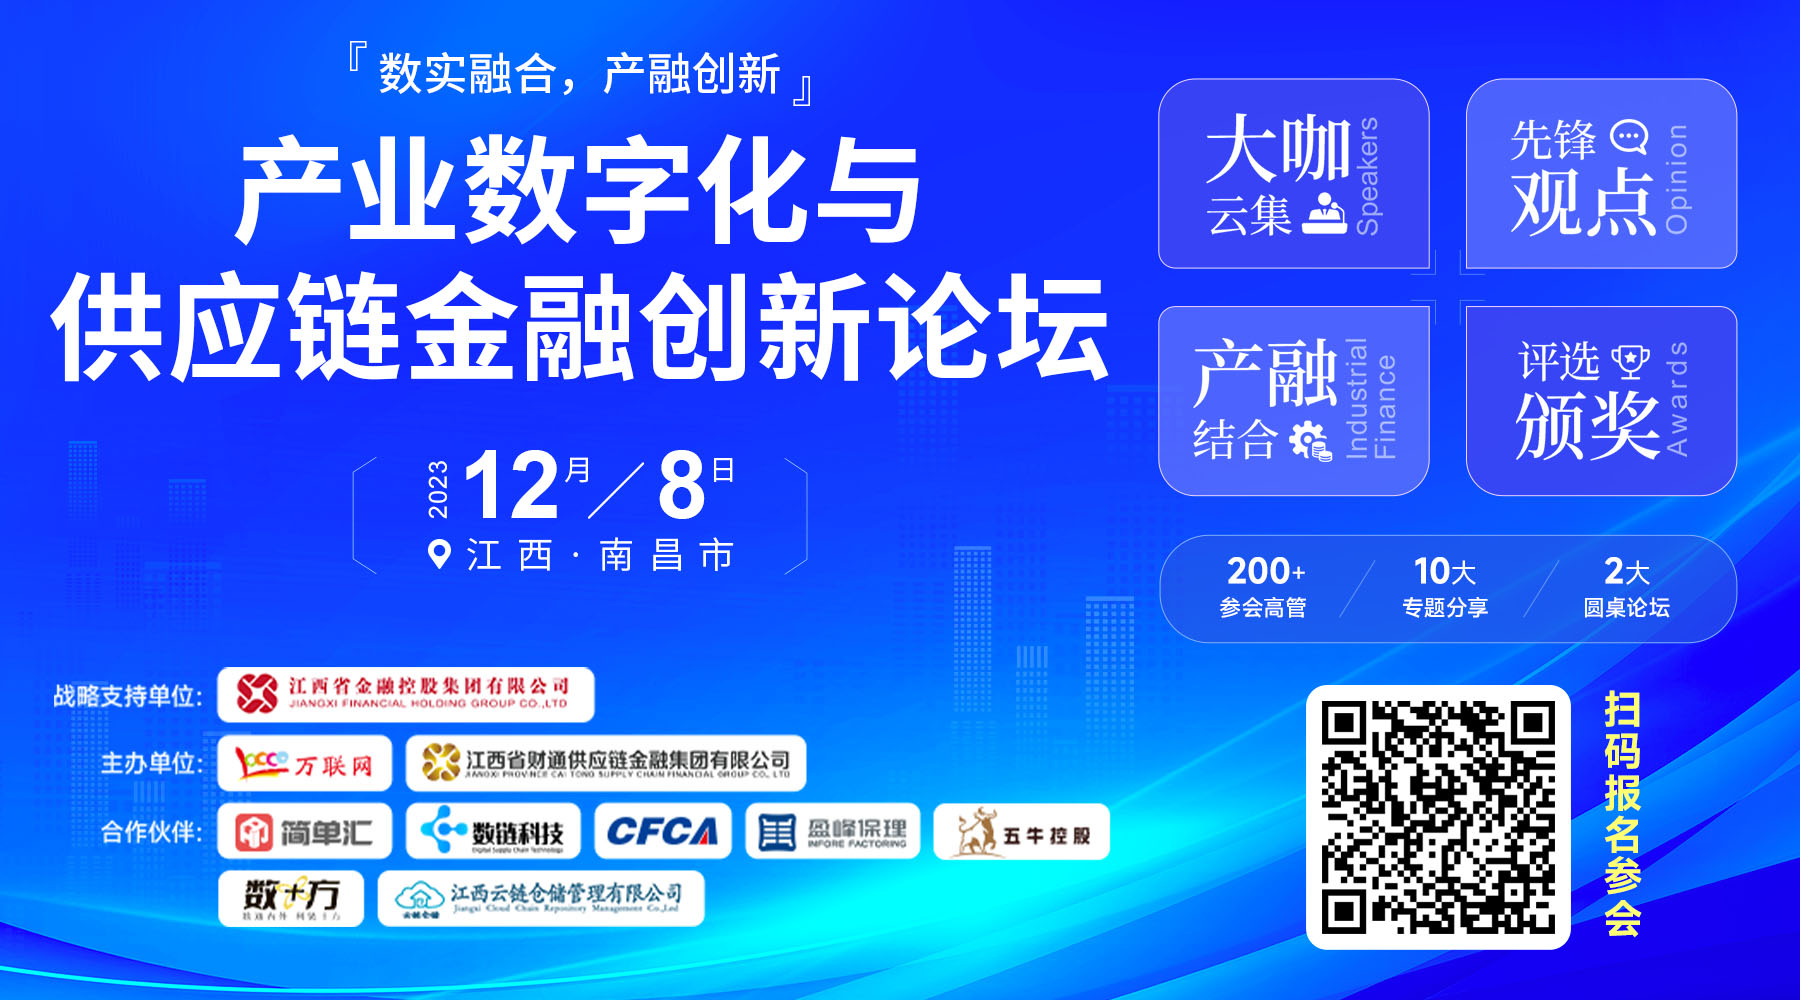 嘉宾确认！产业互联网专家黄贵生将出席12月8日在南昌举办的产业数字化与供应链金融创新论坛